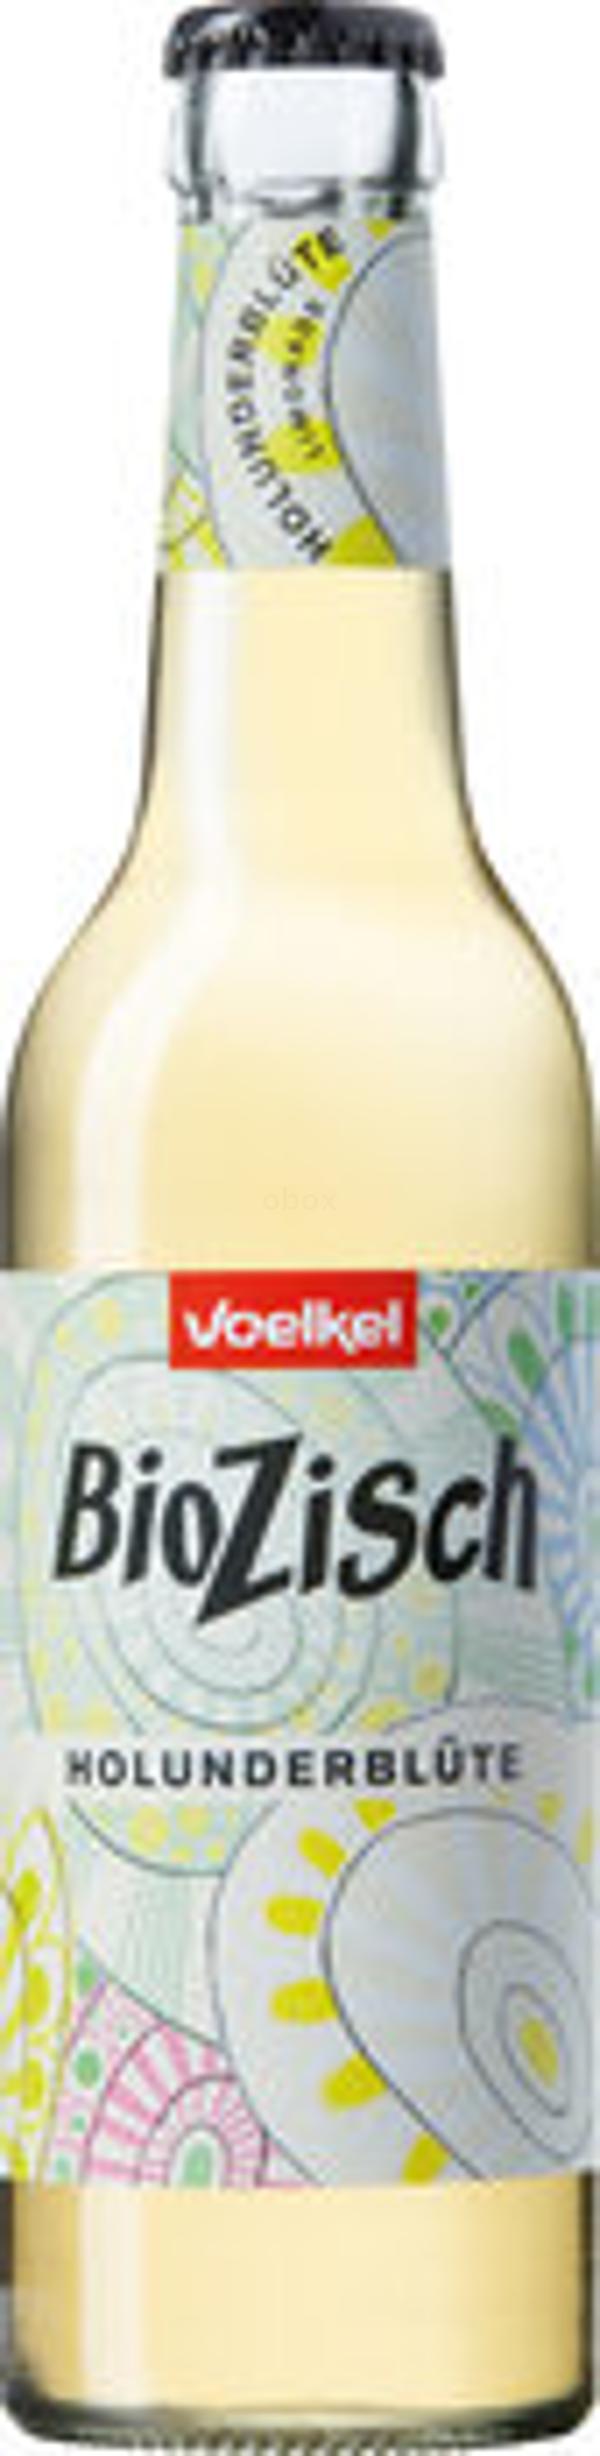 Produktfoto zu BioZisch Holunderblüte, 0,33 l